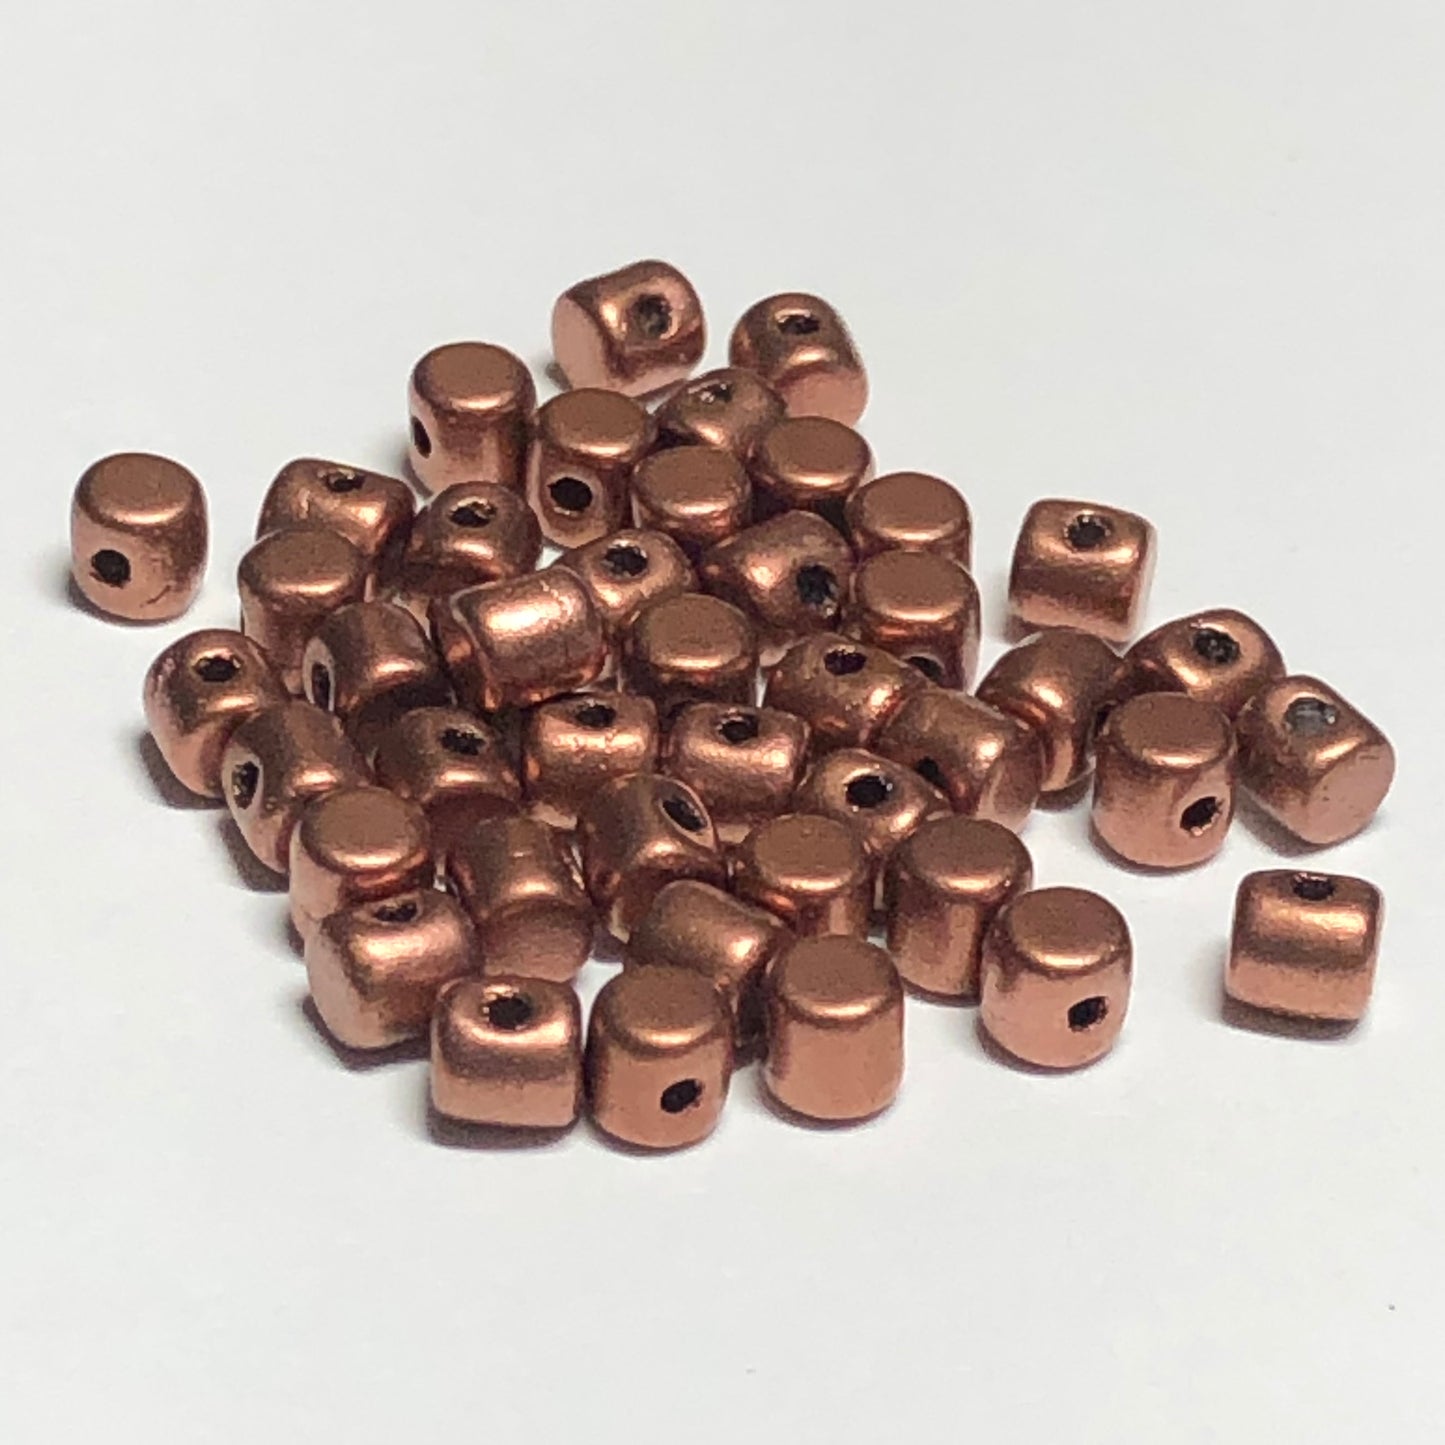 Minos® par Puca® 00030-01780  Matte Copper Gold 2.8 x 3 mm Drum Czech Glass Beads - 5 Grams